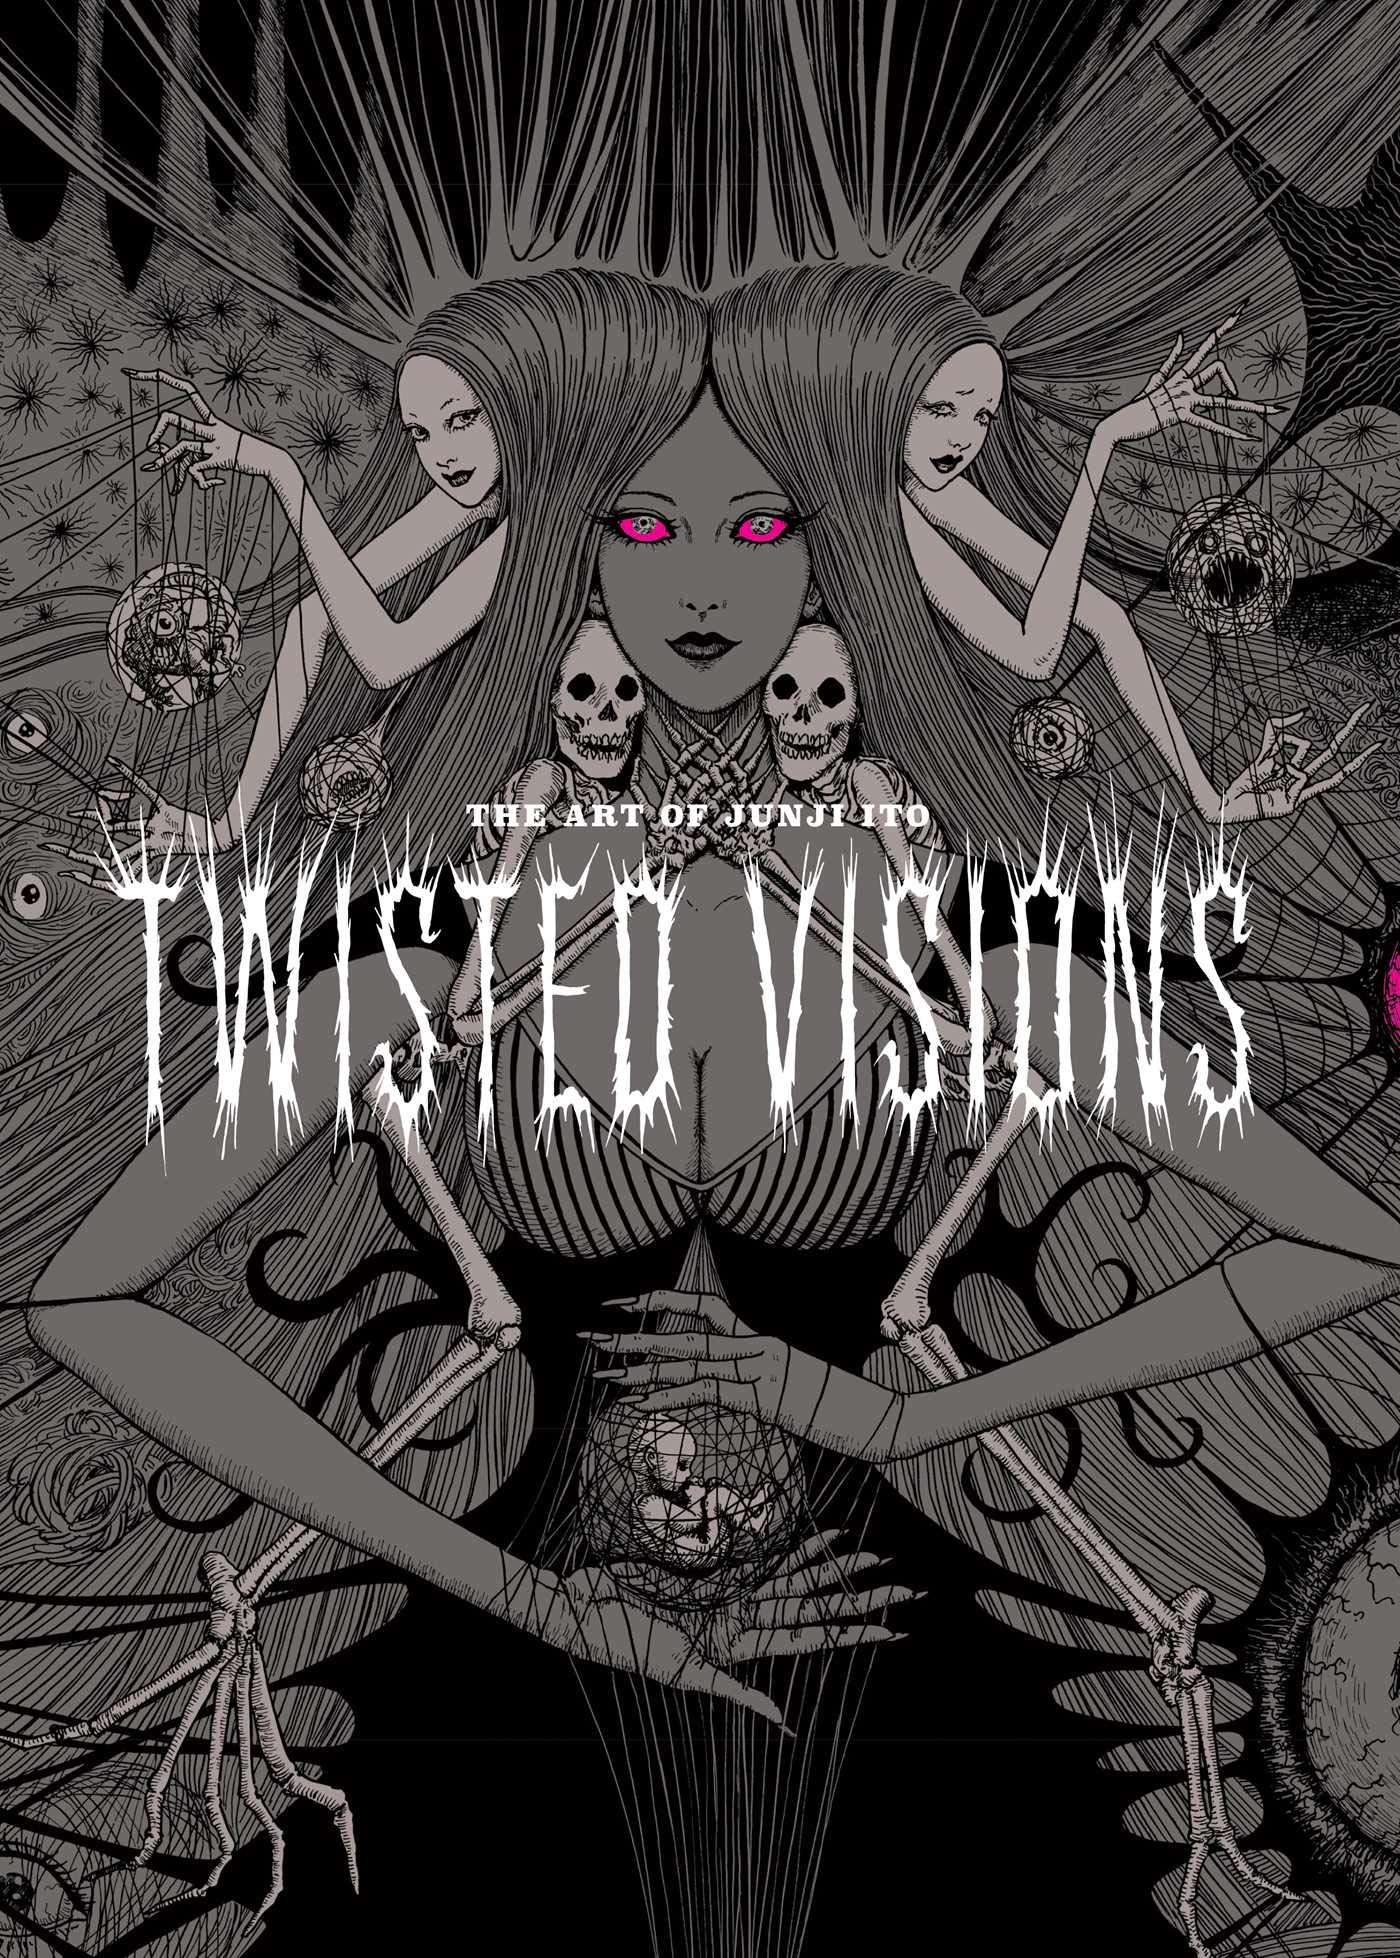 Twisted Vision: The Art of Junji Ito | Junji Ito